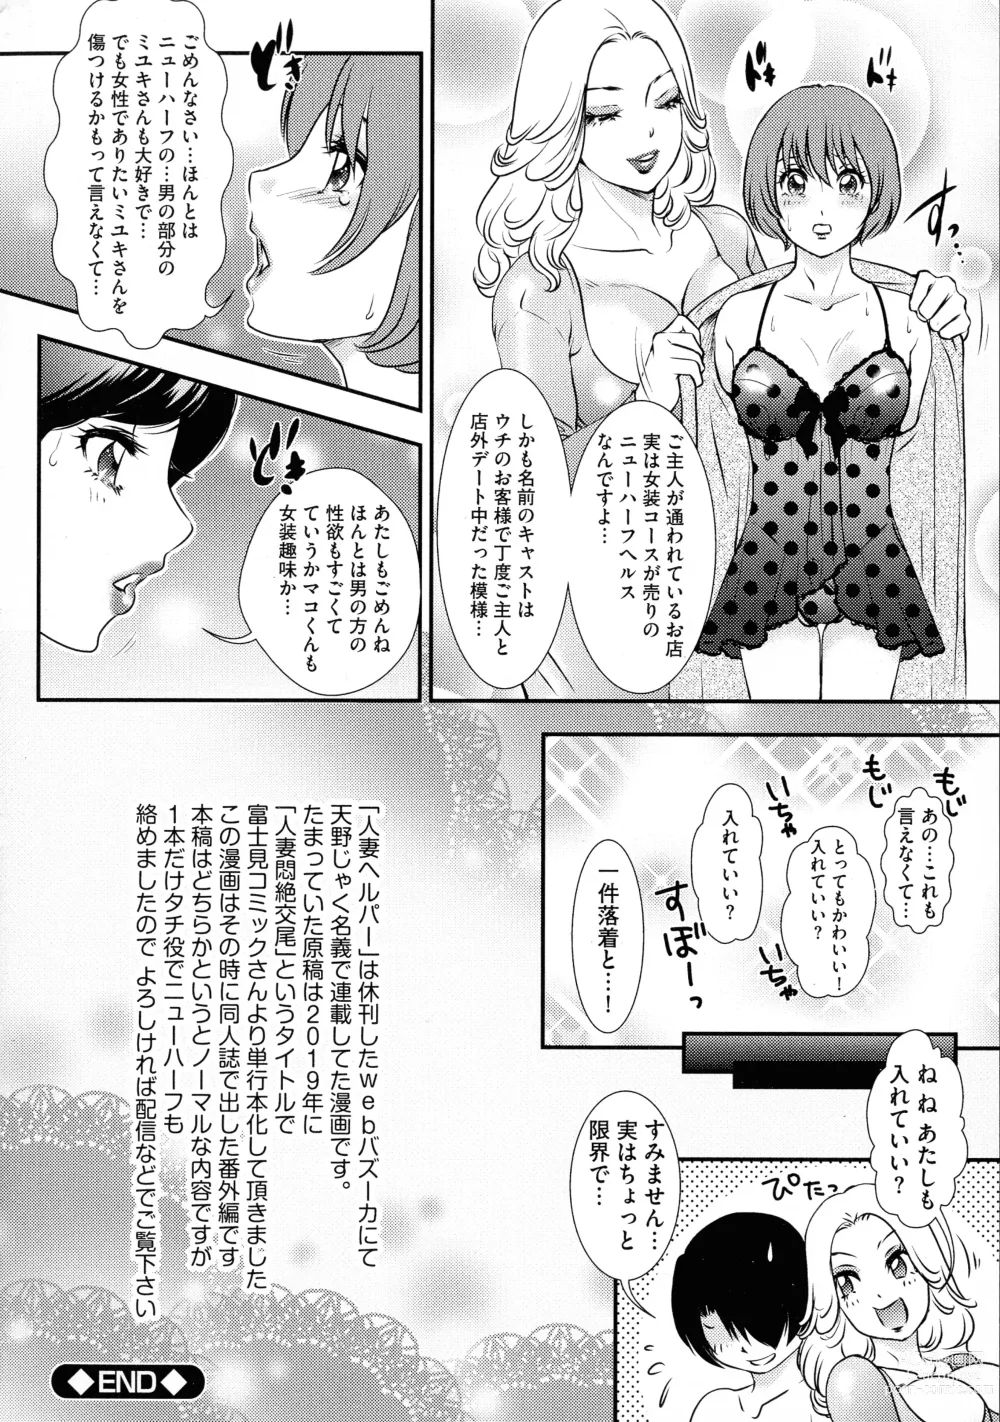 Page 178 of manga Shemale Heaven!